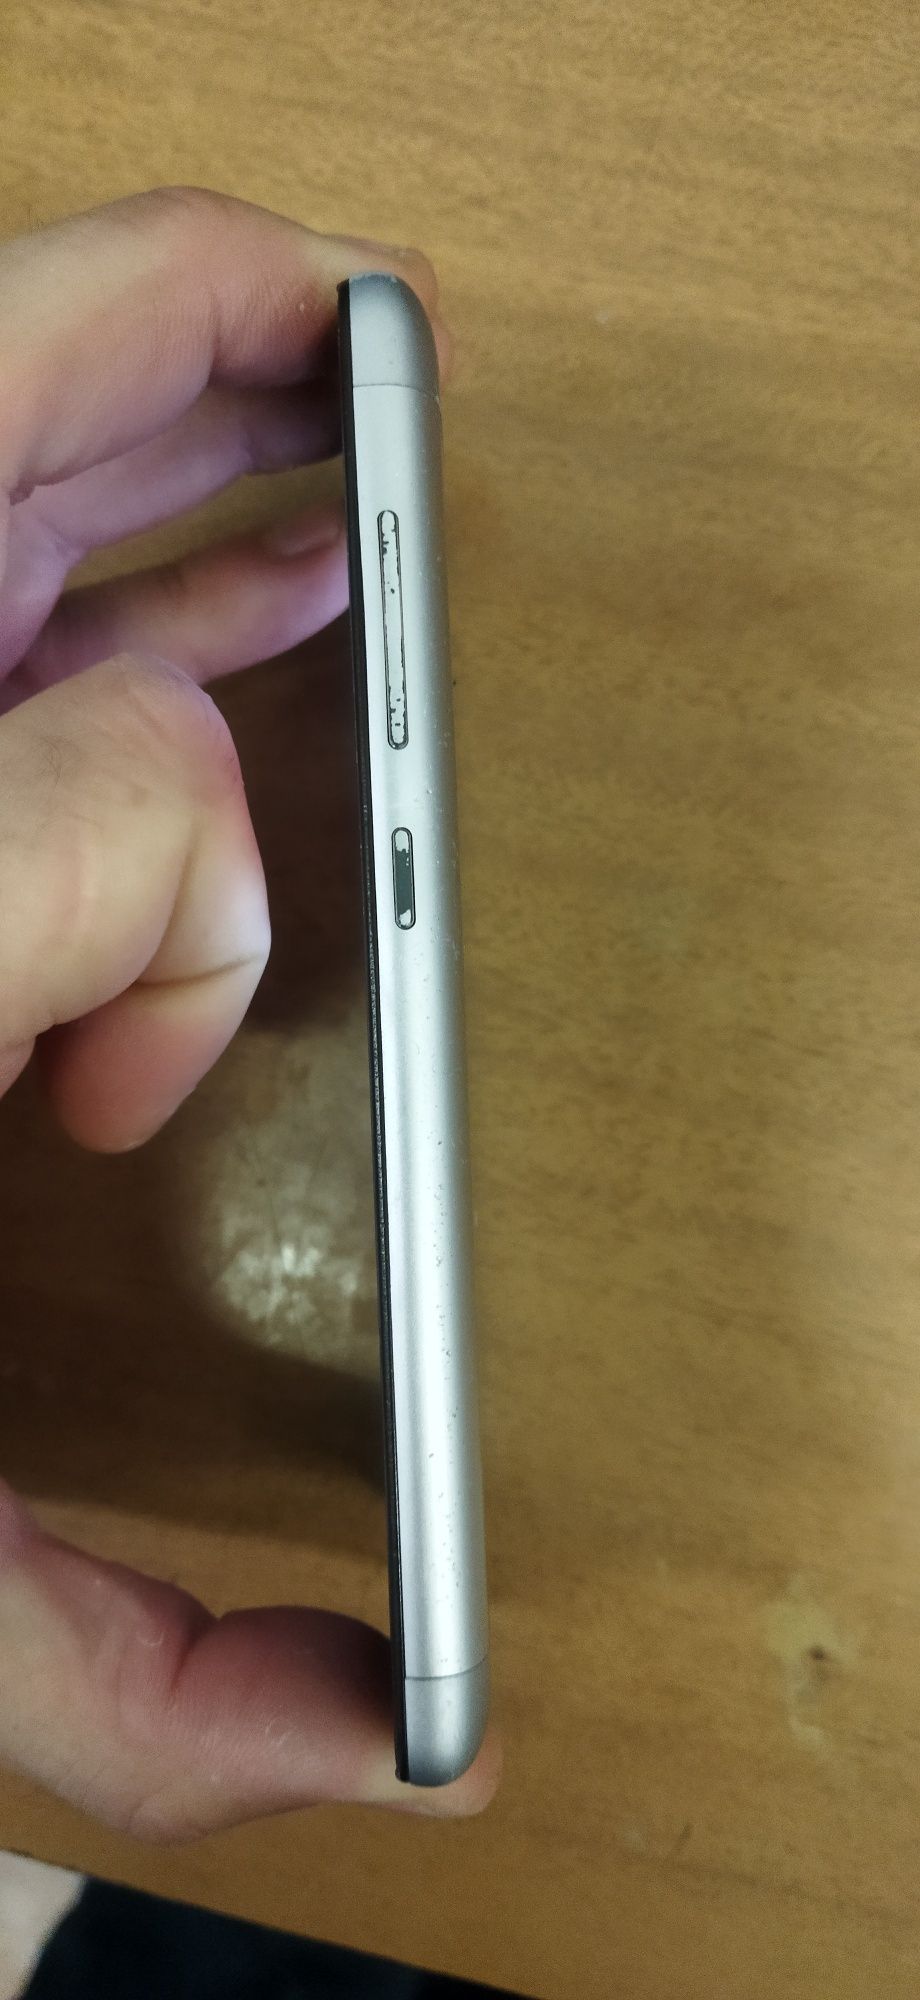 Продам телефон Xiaomi redmi 3s, редмі 3с 2/16